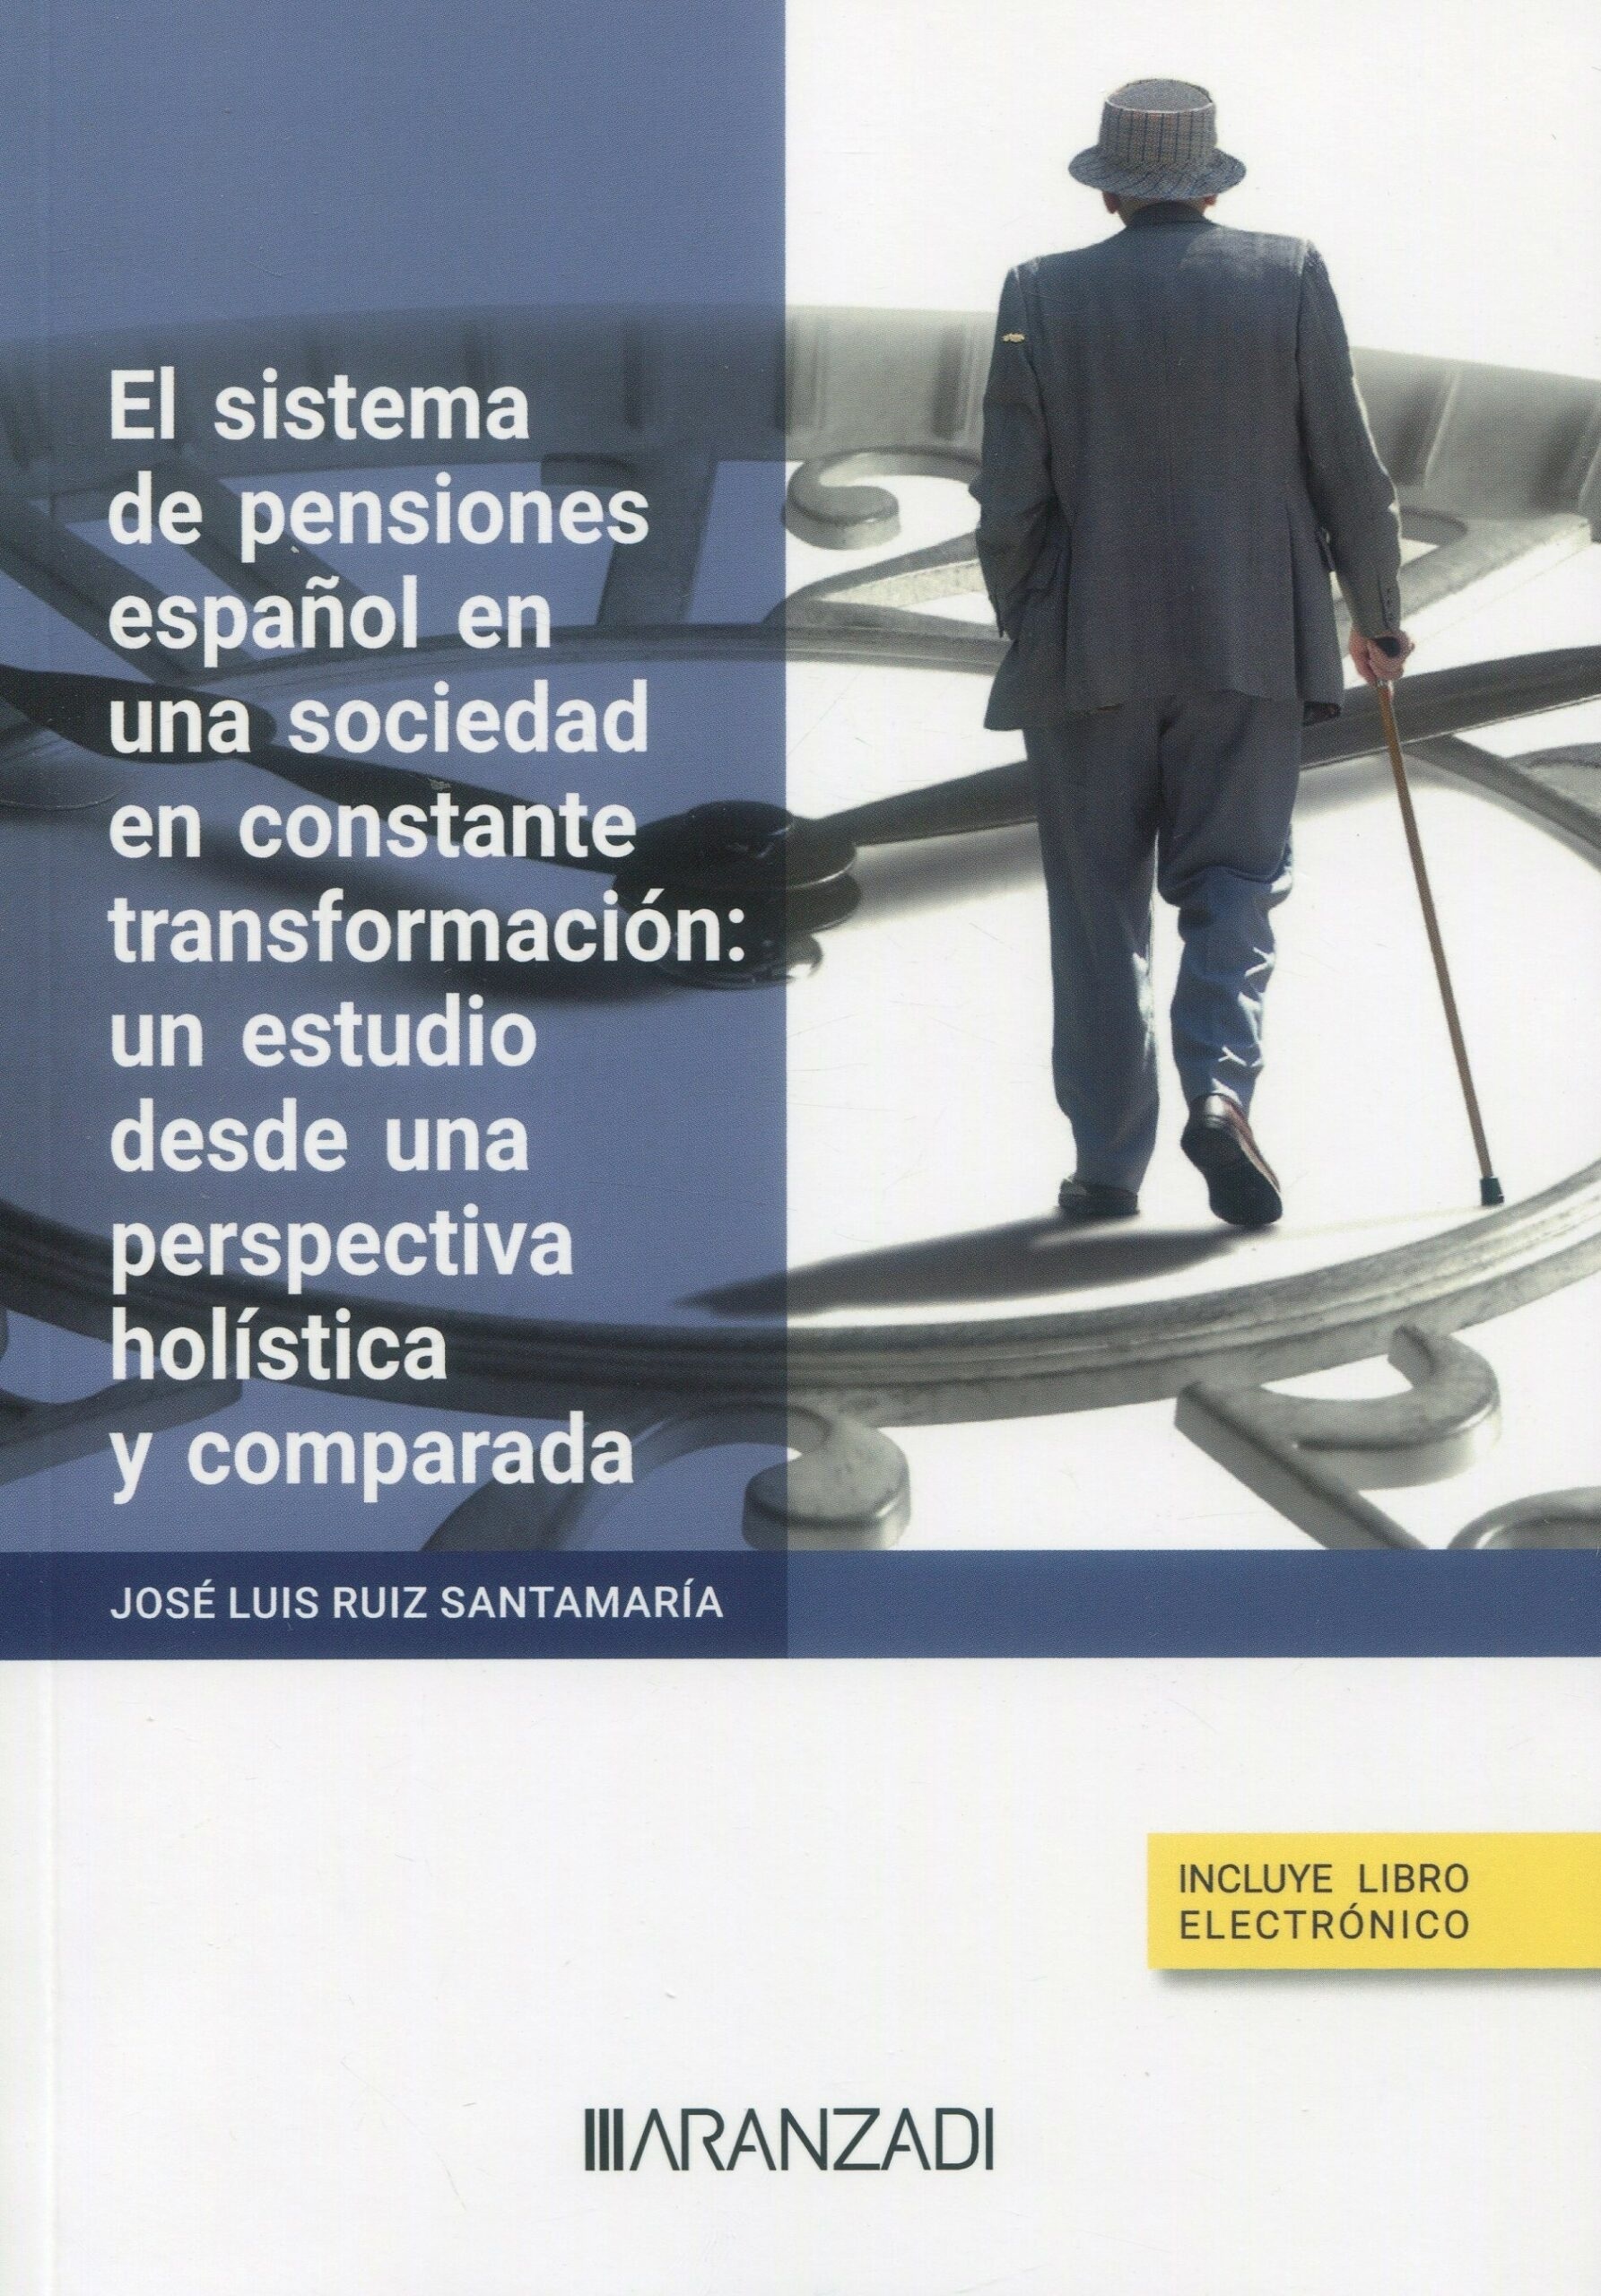 El sistema de pensiones español en una sociedad en constante transformación: "Un estudio desde una perspectiva holística y comparada"